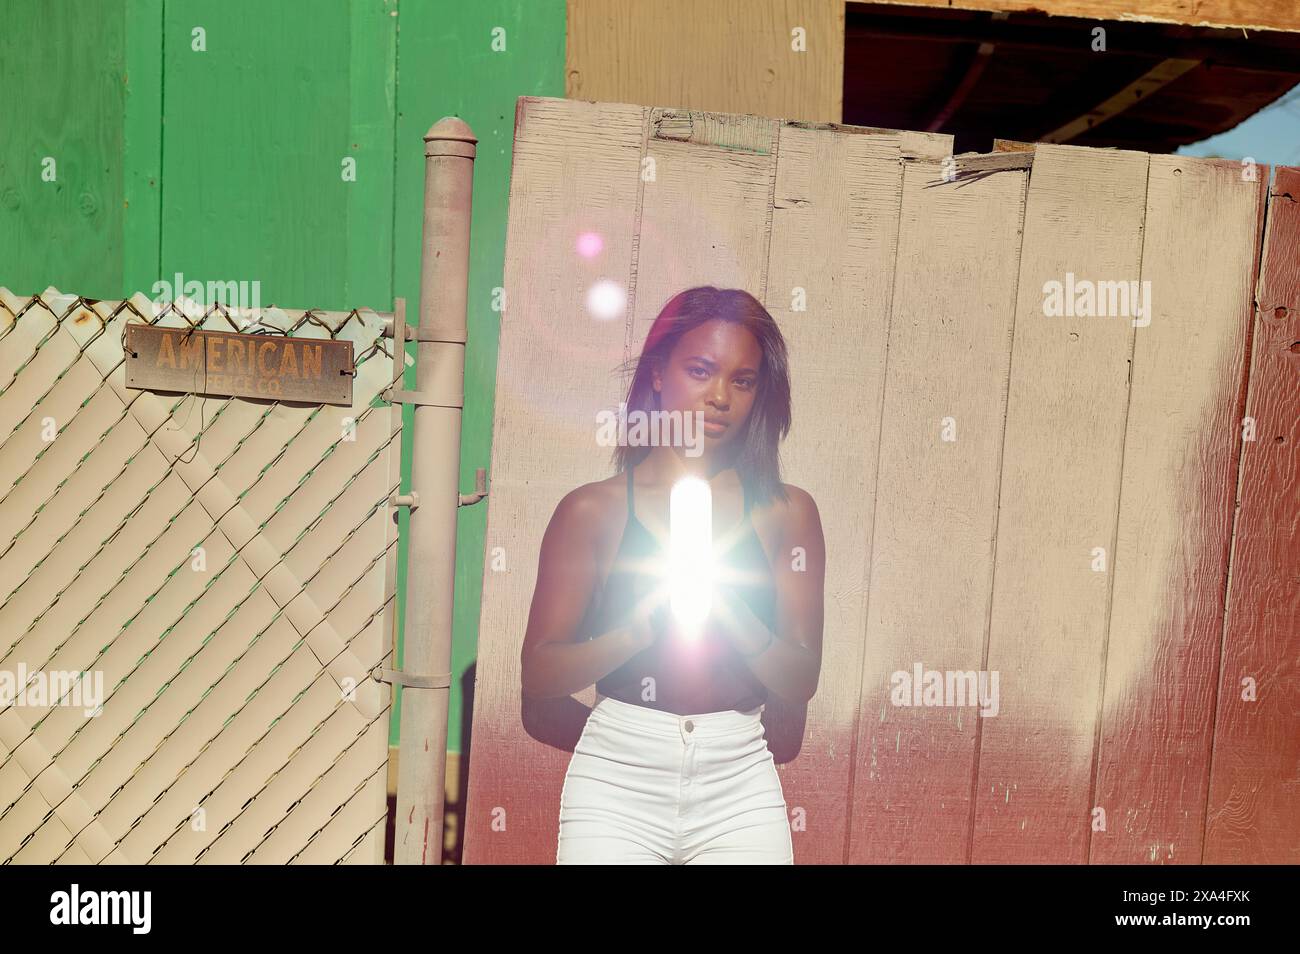 Eine Frau steht vor einer rustikalen Mauer und einem Zaun mit dem Wort „AMERICAN“ auf einem Schild und hält eine helle Lichtquelle, die ihren Mittelteil verdeckt. Stockfoto